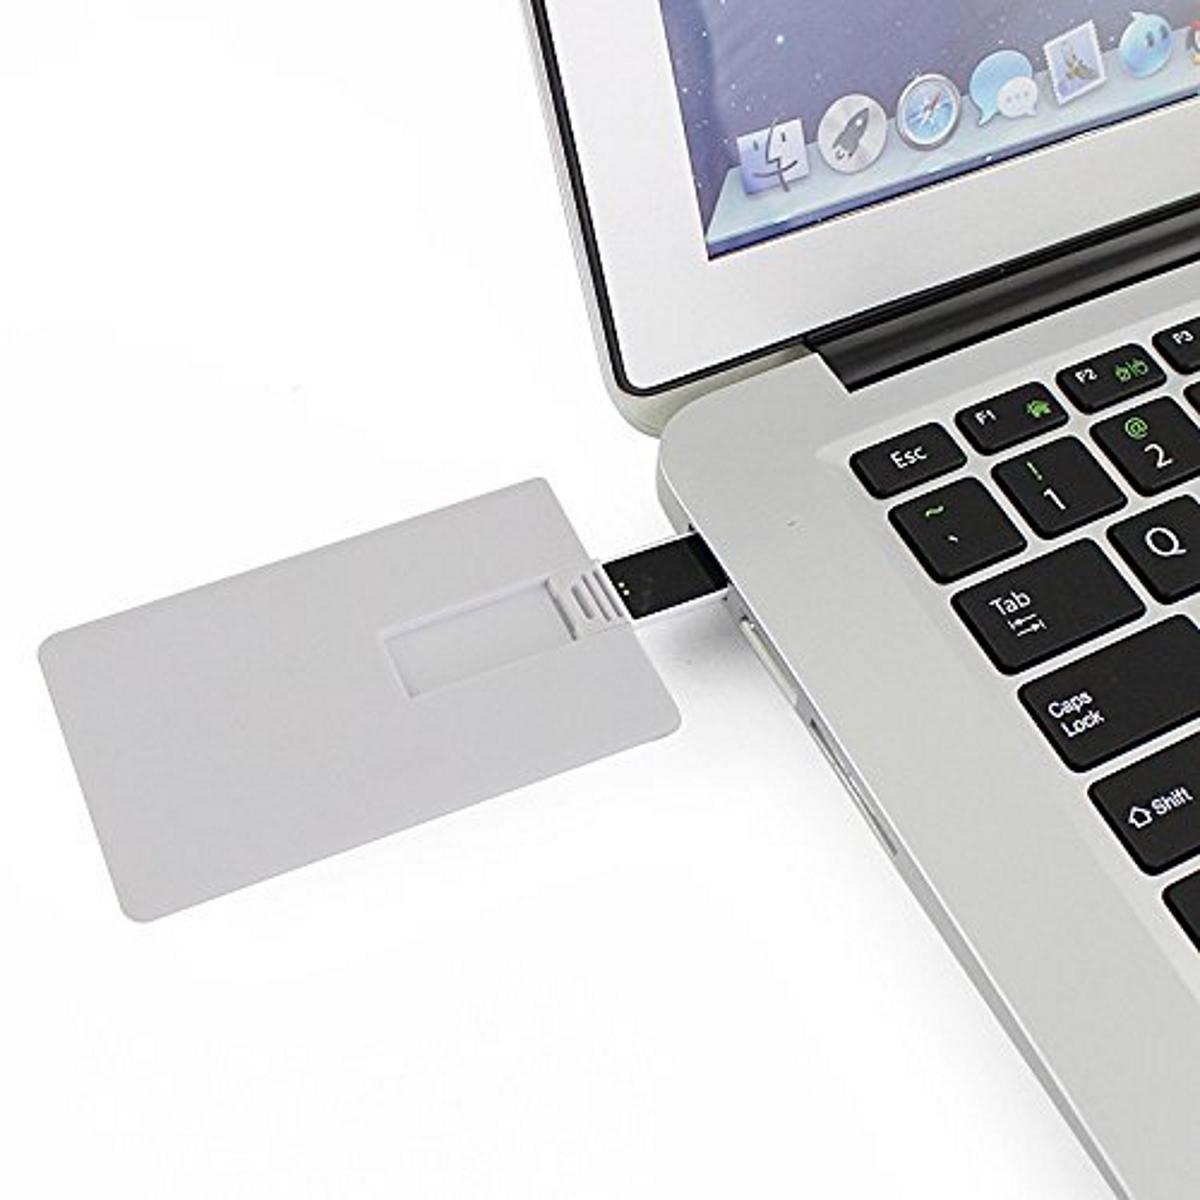 GB) USB Kreditkarte USB-Stick (Weiss, GERMANY 16 ®